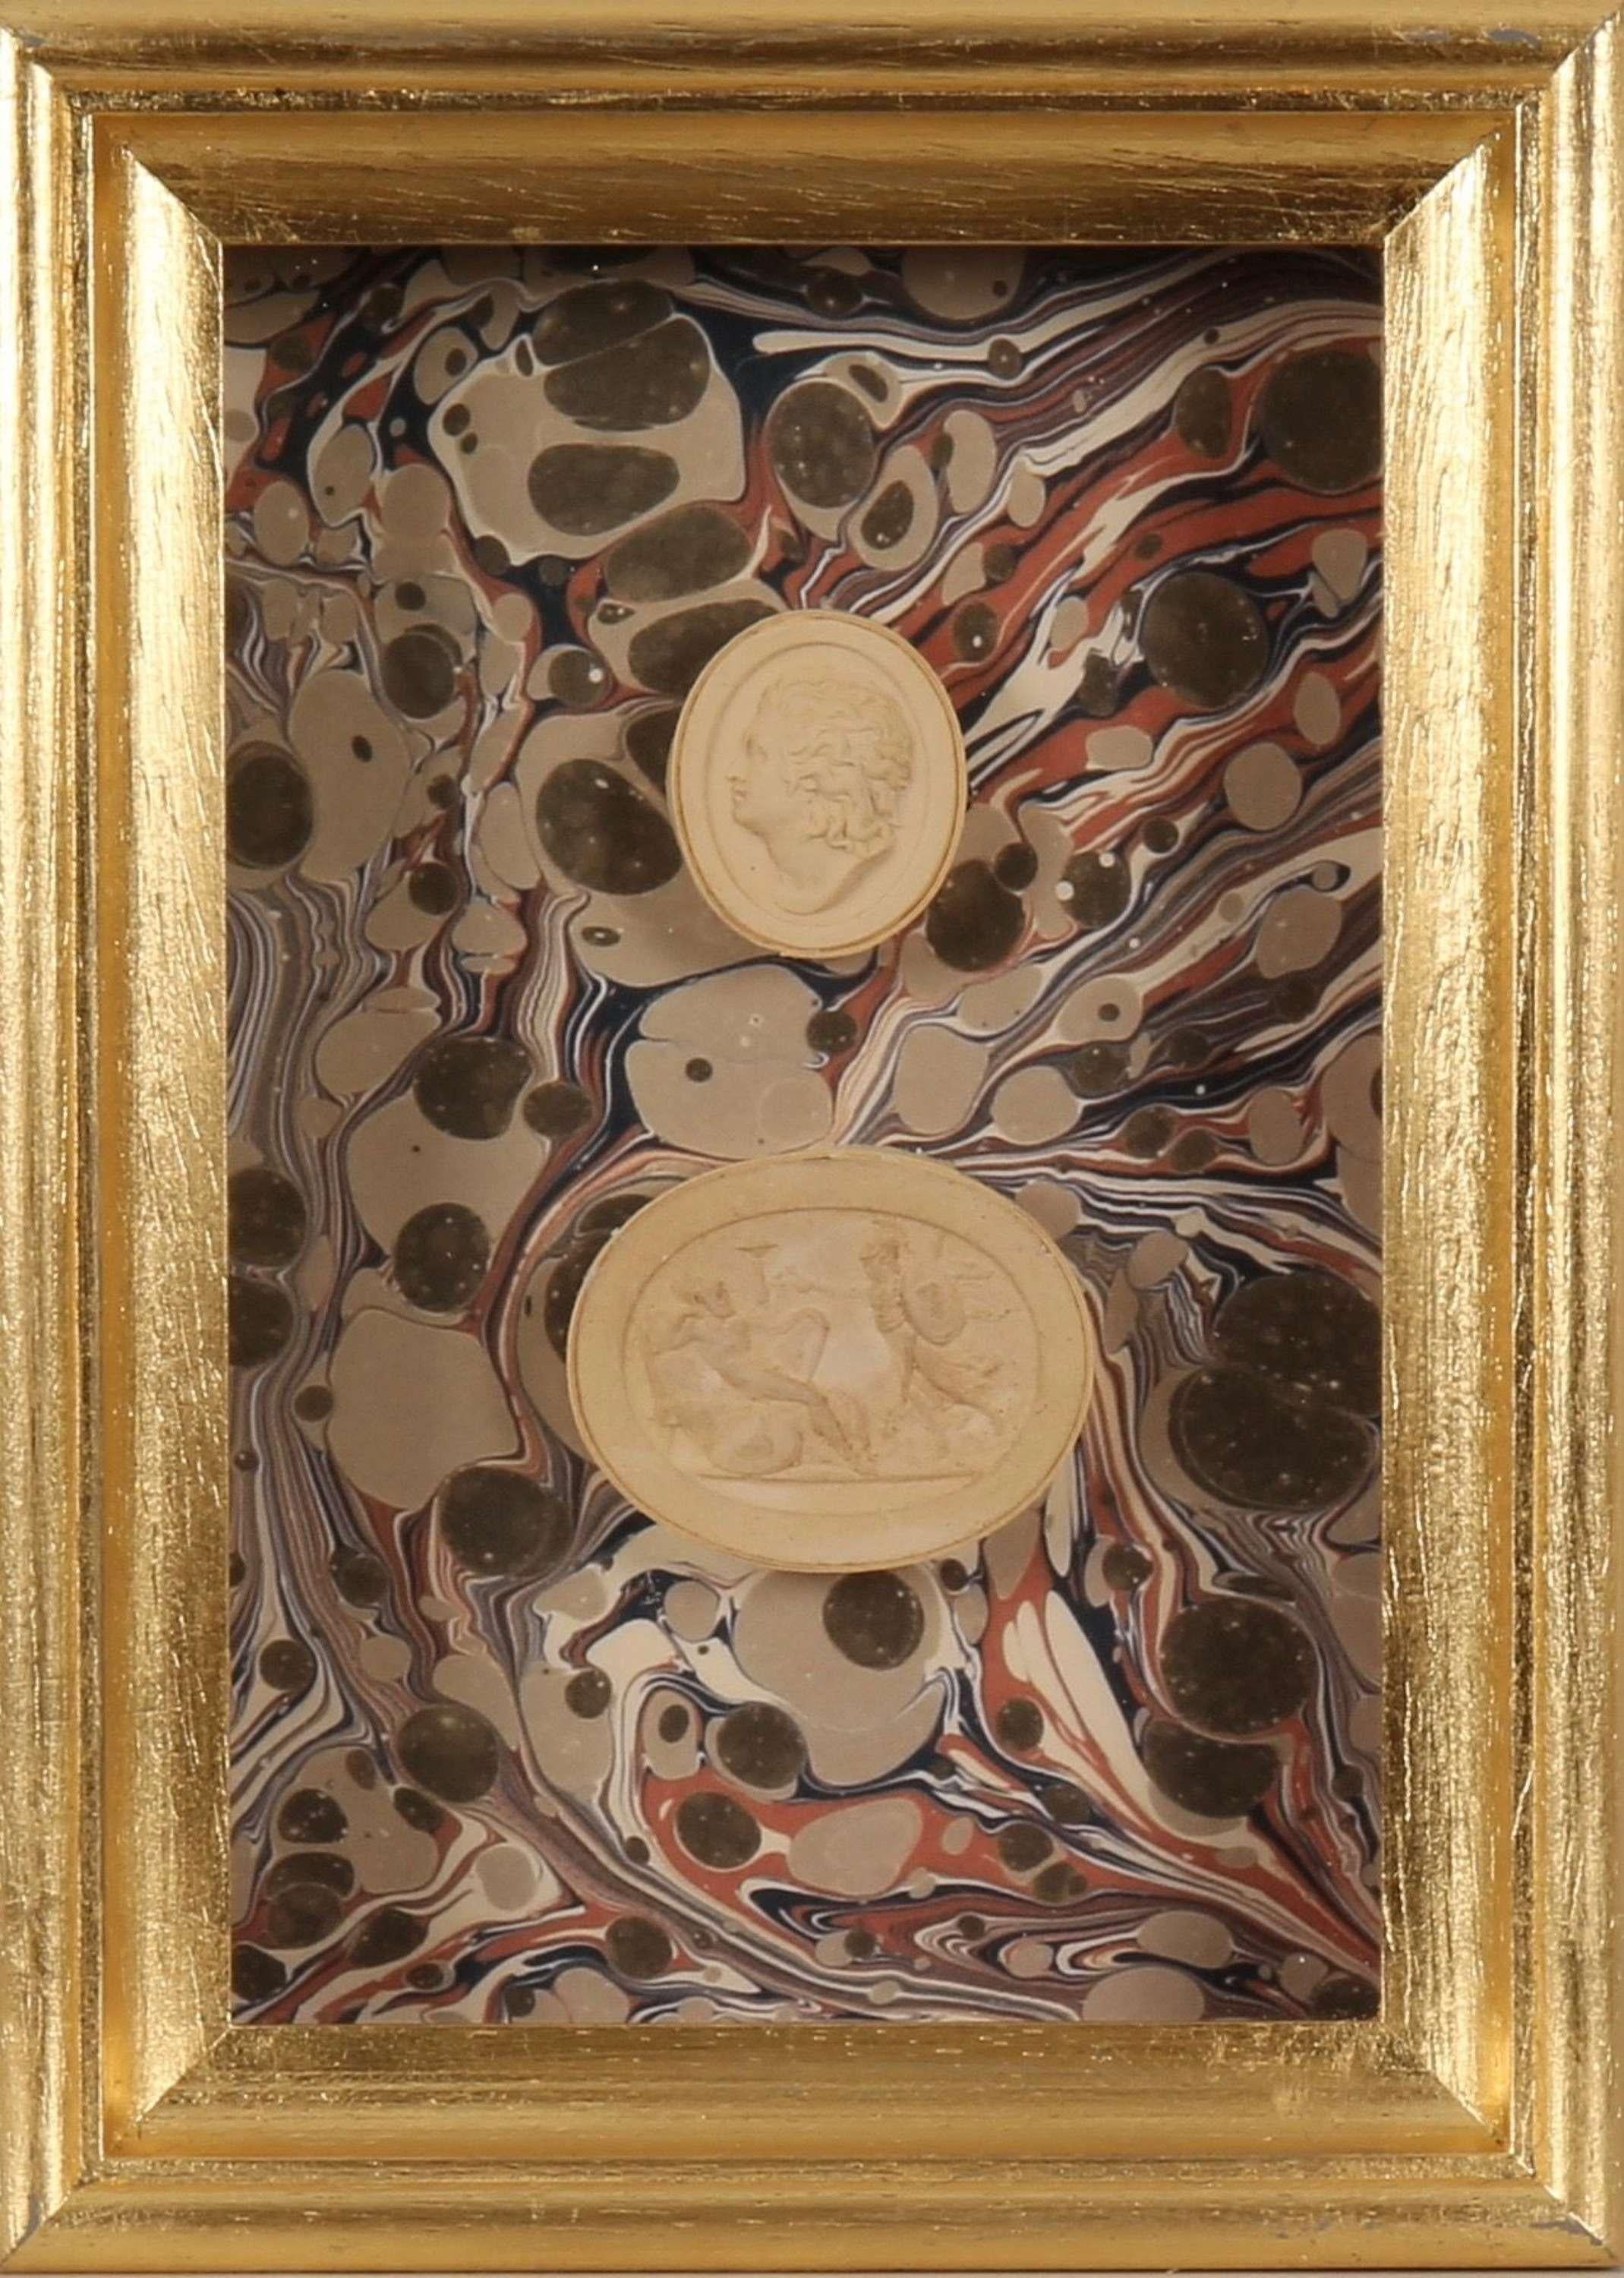 Paoletti Impronte, ‘Mussei Diversi’ Framed Plaster intaglio Seal, Rome c1800. - Art by Bartolomeo Paoletti and Pietro Paoletti